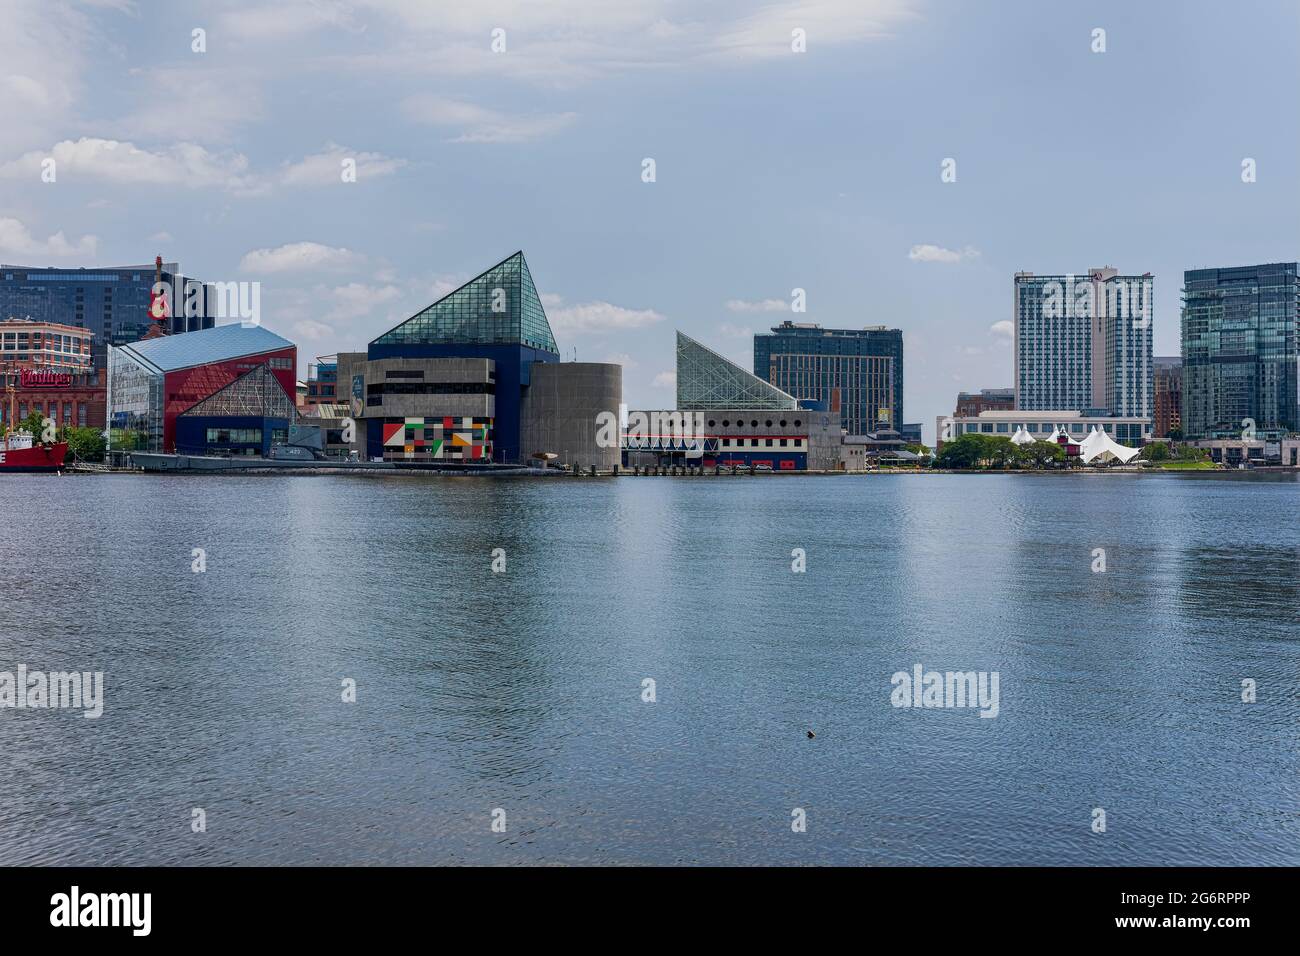 Vue sur le port intérieur de Baltimore, rivière Patapsco. Banque D'Images